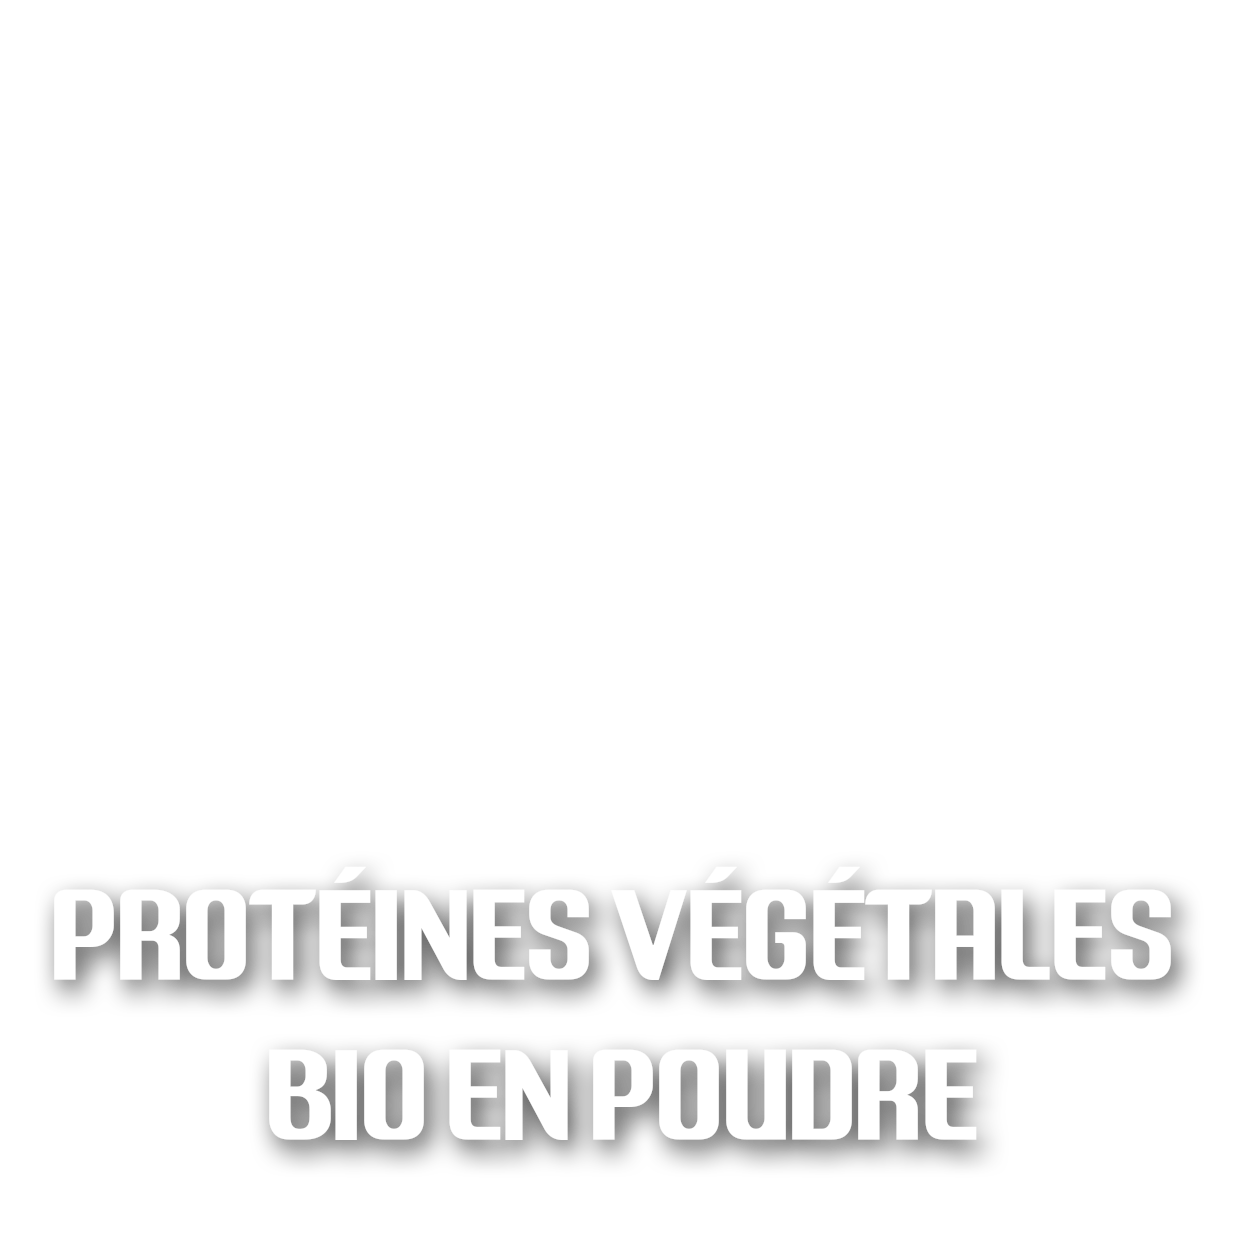 Protéines végétales bio en poudre